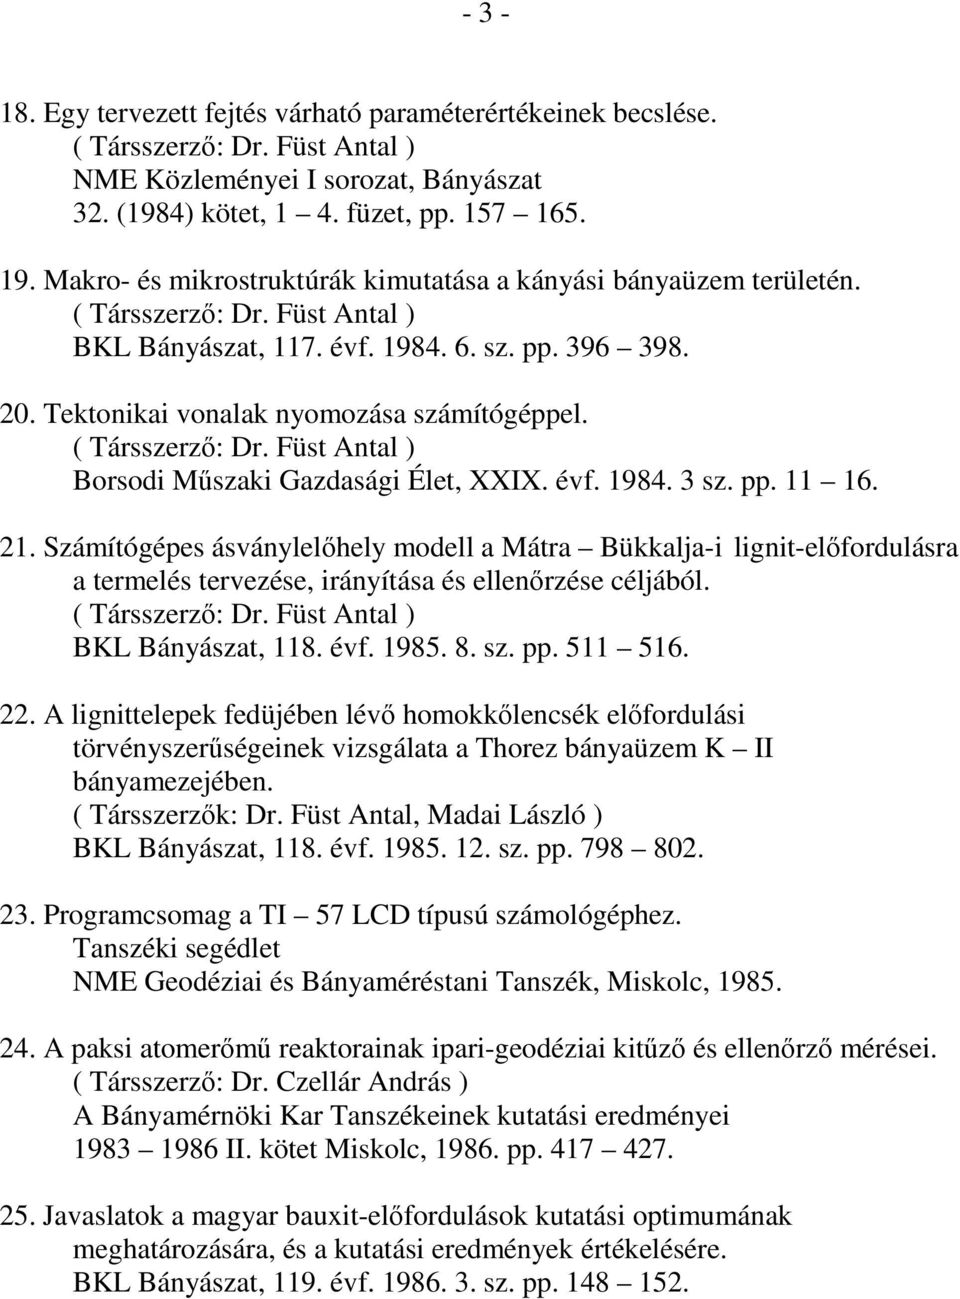 Számítógépes ásványlelıhely modell a Mátra Bükkalja-i lignit-elıfordulásra a termelés tervezése, irányítása és ellenırzése céljából. BKL Bányászat, 118. évf. 1985. 8. sz. pp. 511 516. 22.